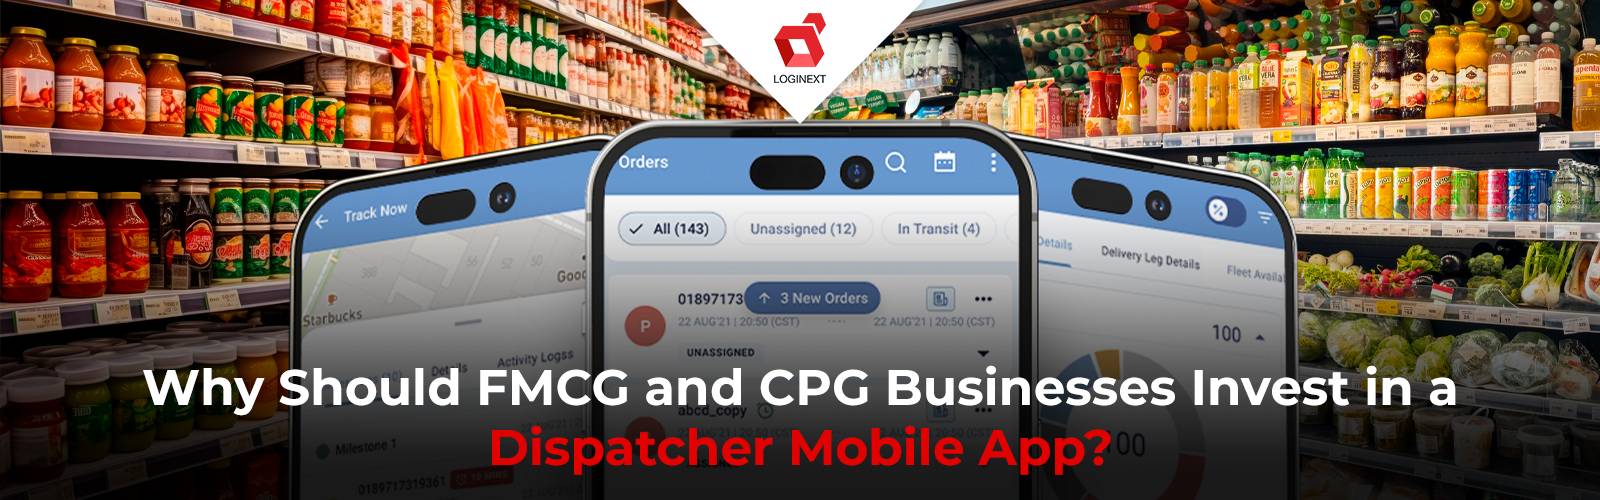 Varför ska FMCG- och CPG-företag investera i en Dispatcher-mobilapp?